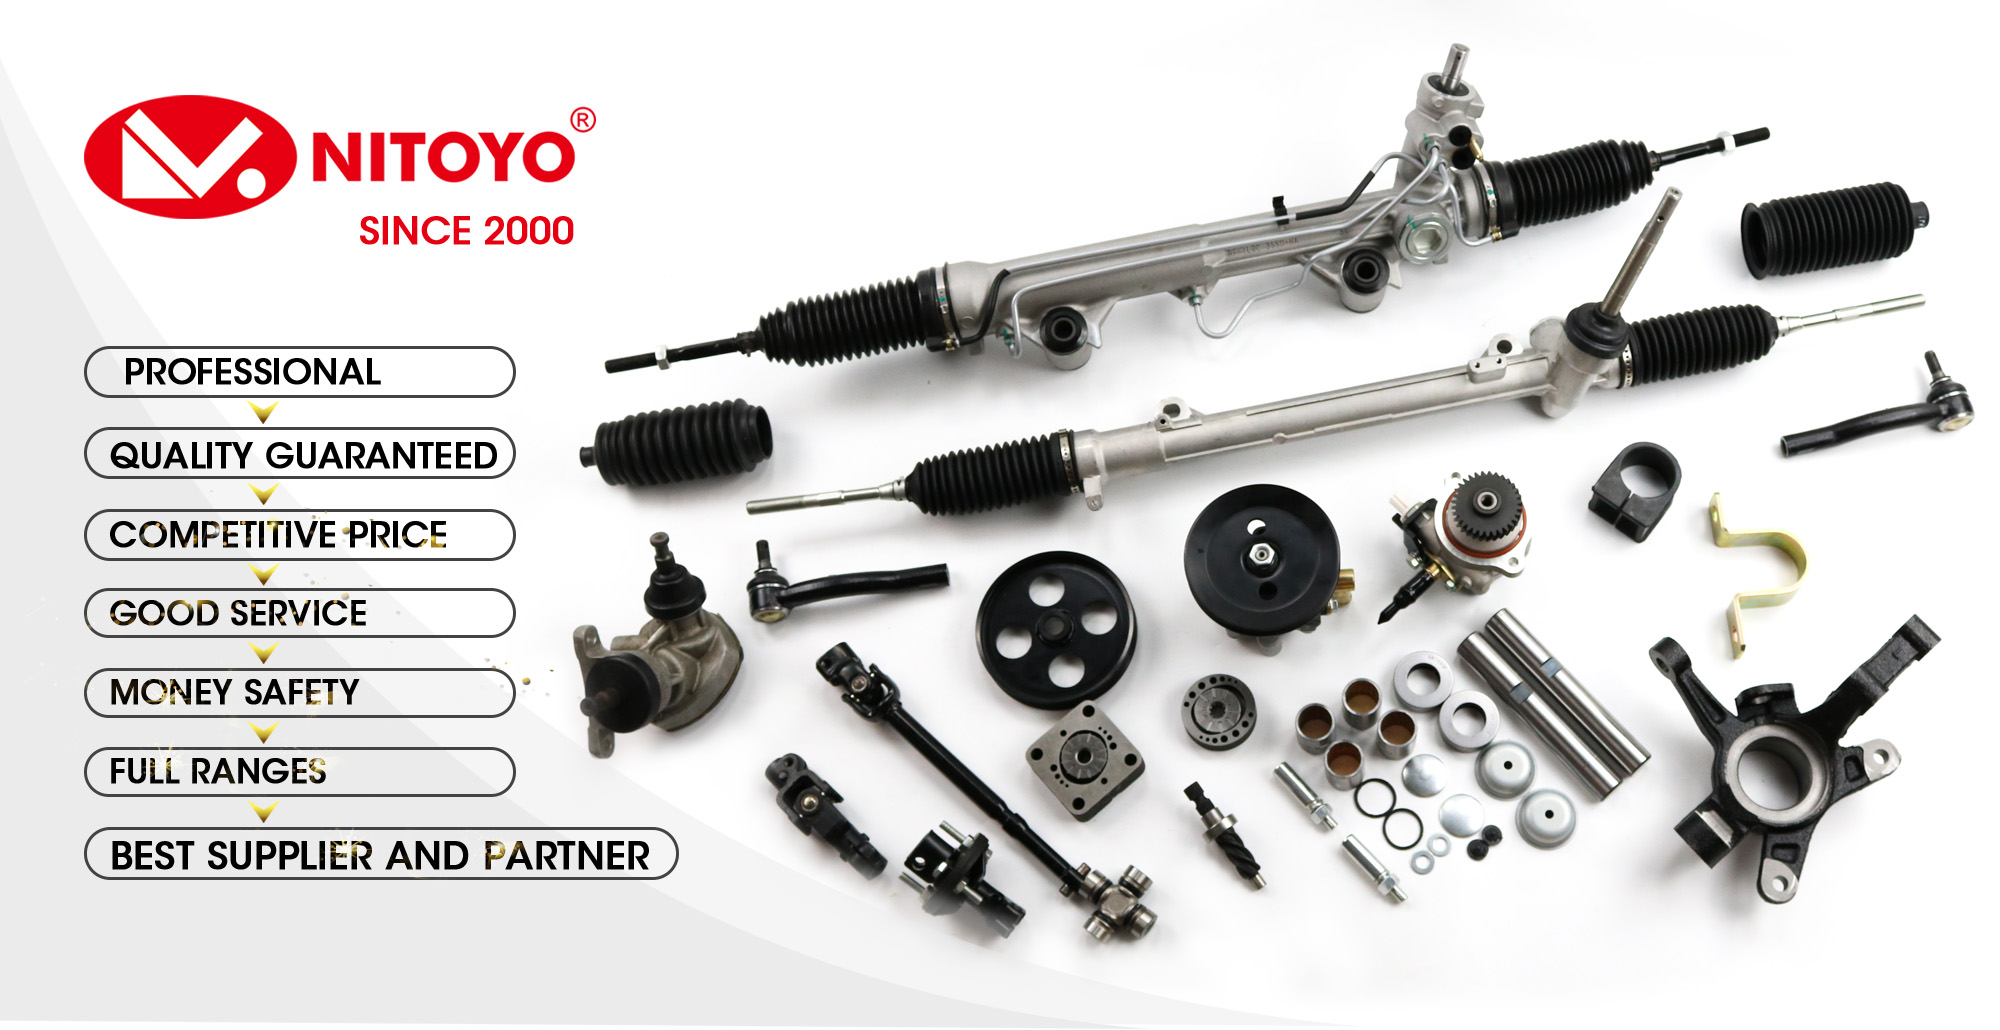 49001-VW600 49001-VZ10A Power Steering Rack Used For Nissan Urvan E25 KA24DE 2001-2012 